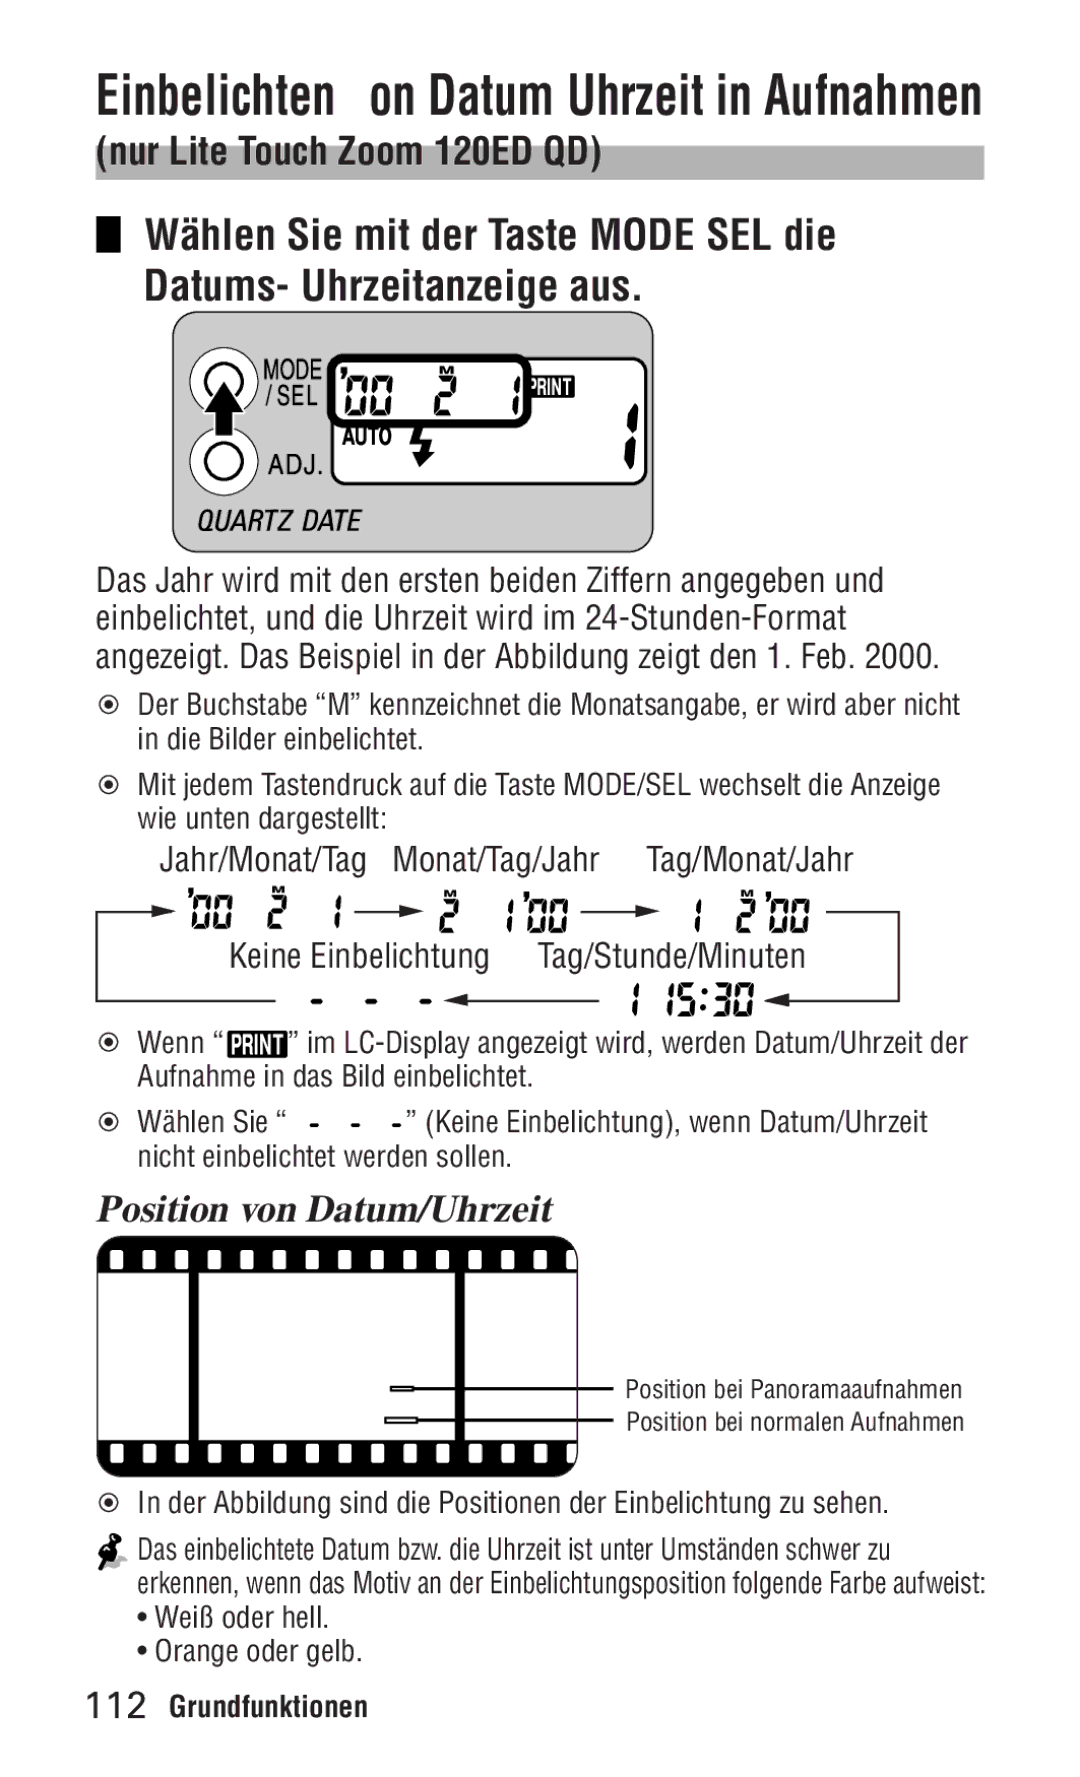 Nikon ED 120 instruction manual Einbelichten von Datum/Uhrzeit in Aufnahmen, Position von Datum/Uhrzeit 